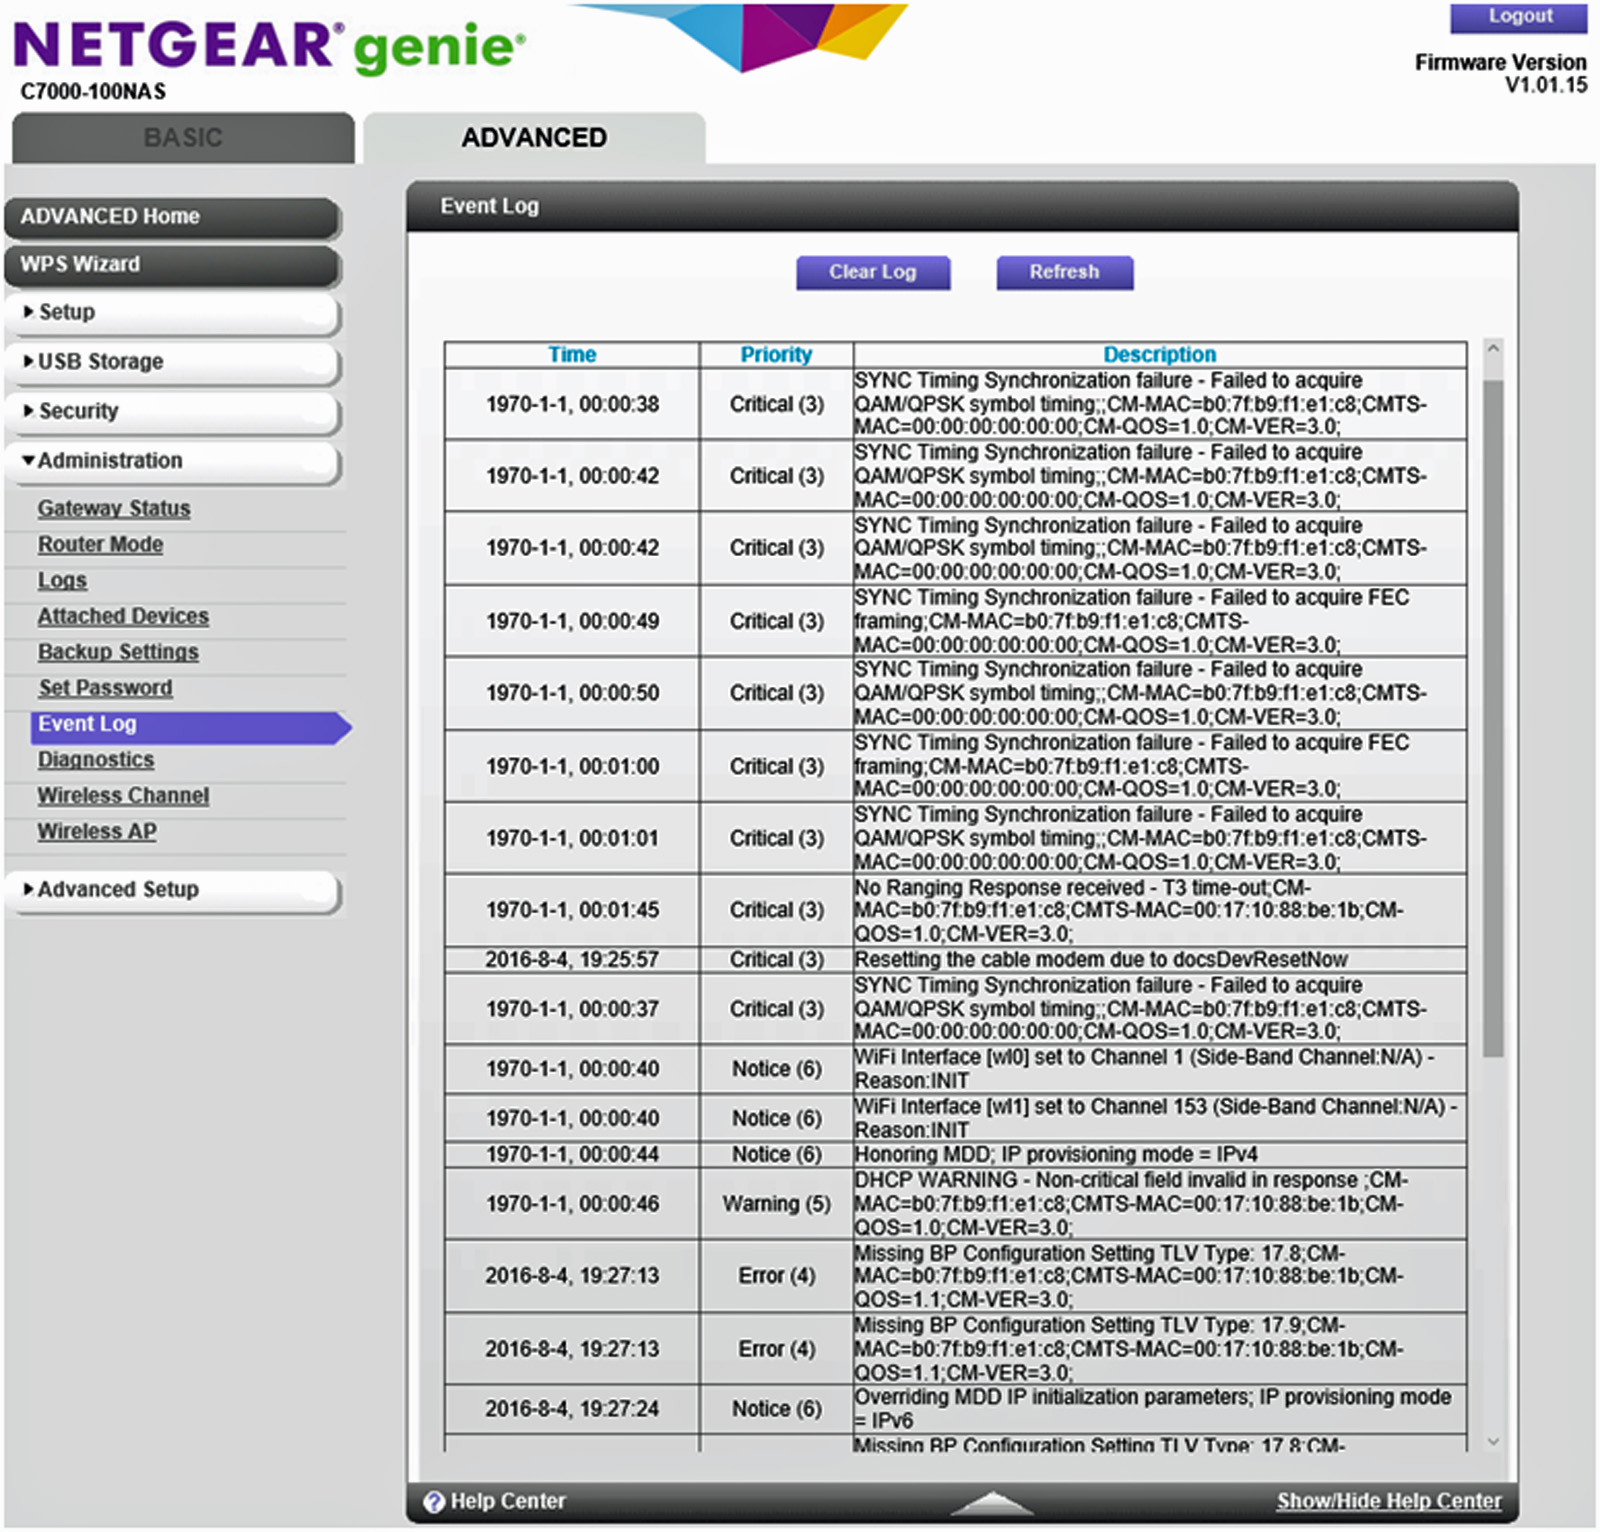 Netgear C7000 event log as of 8-8-2016.jpg